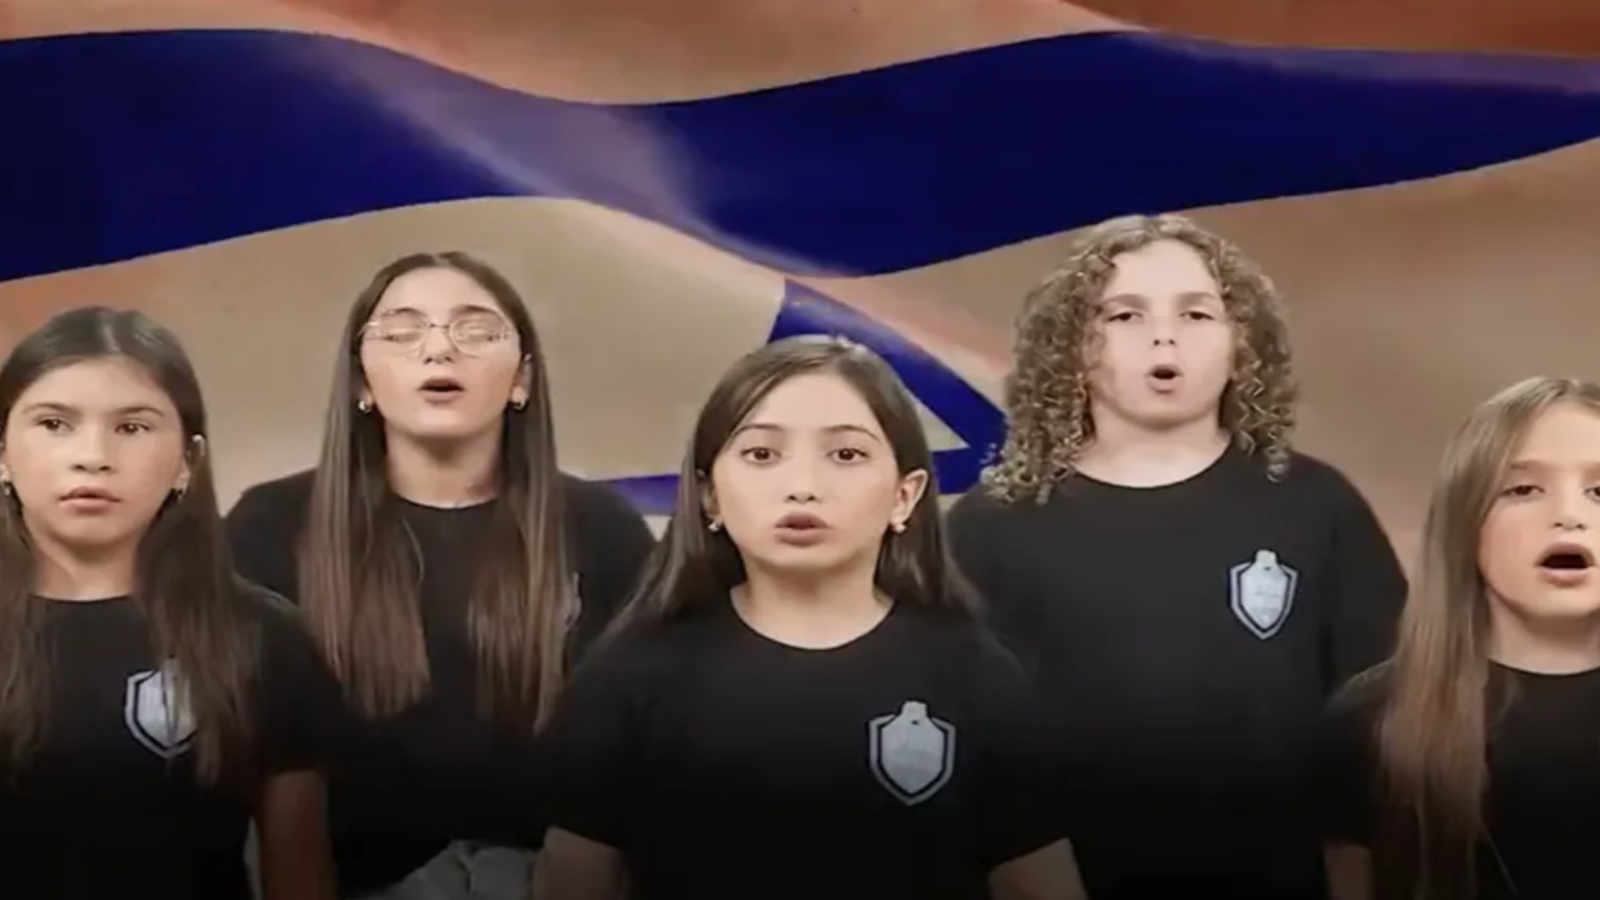 أطفال إسرائيليون يغنون نشيد "إبادة غزة"